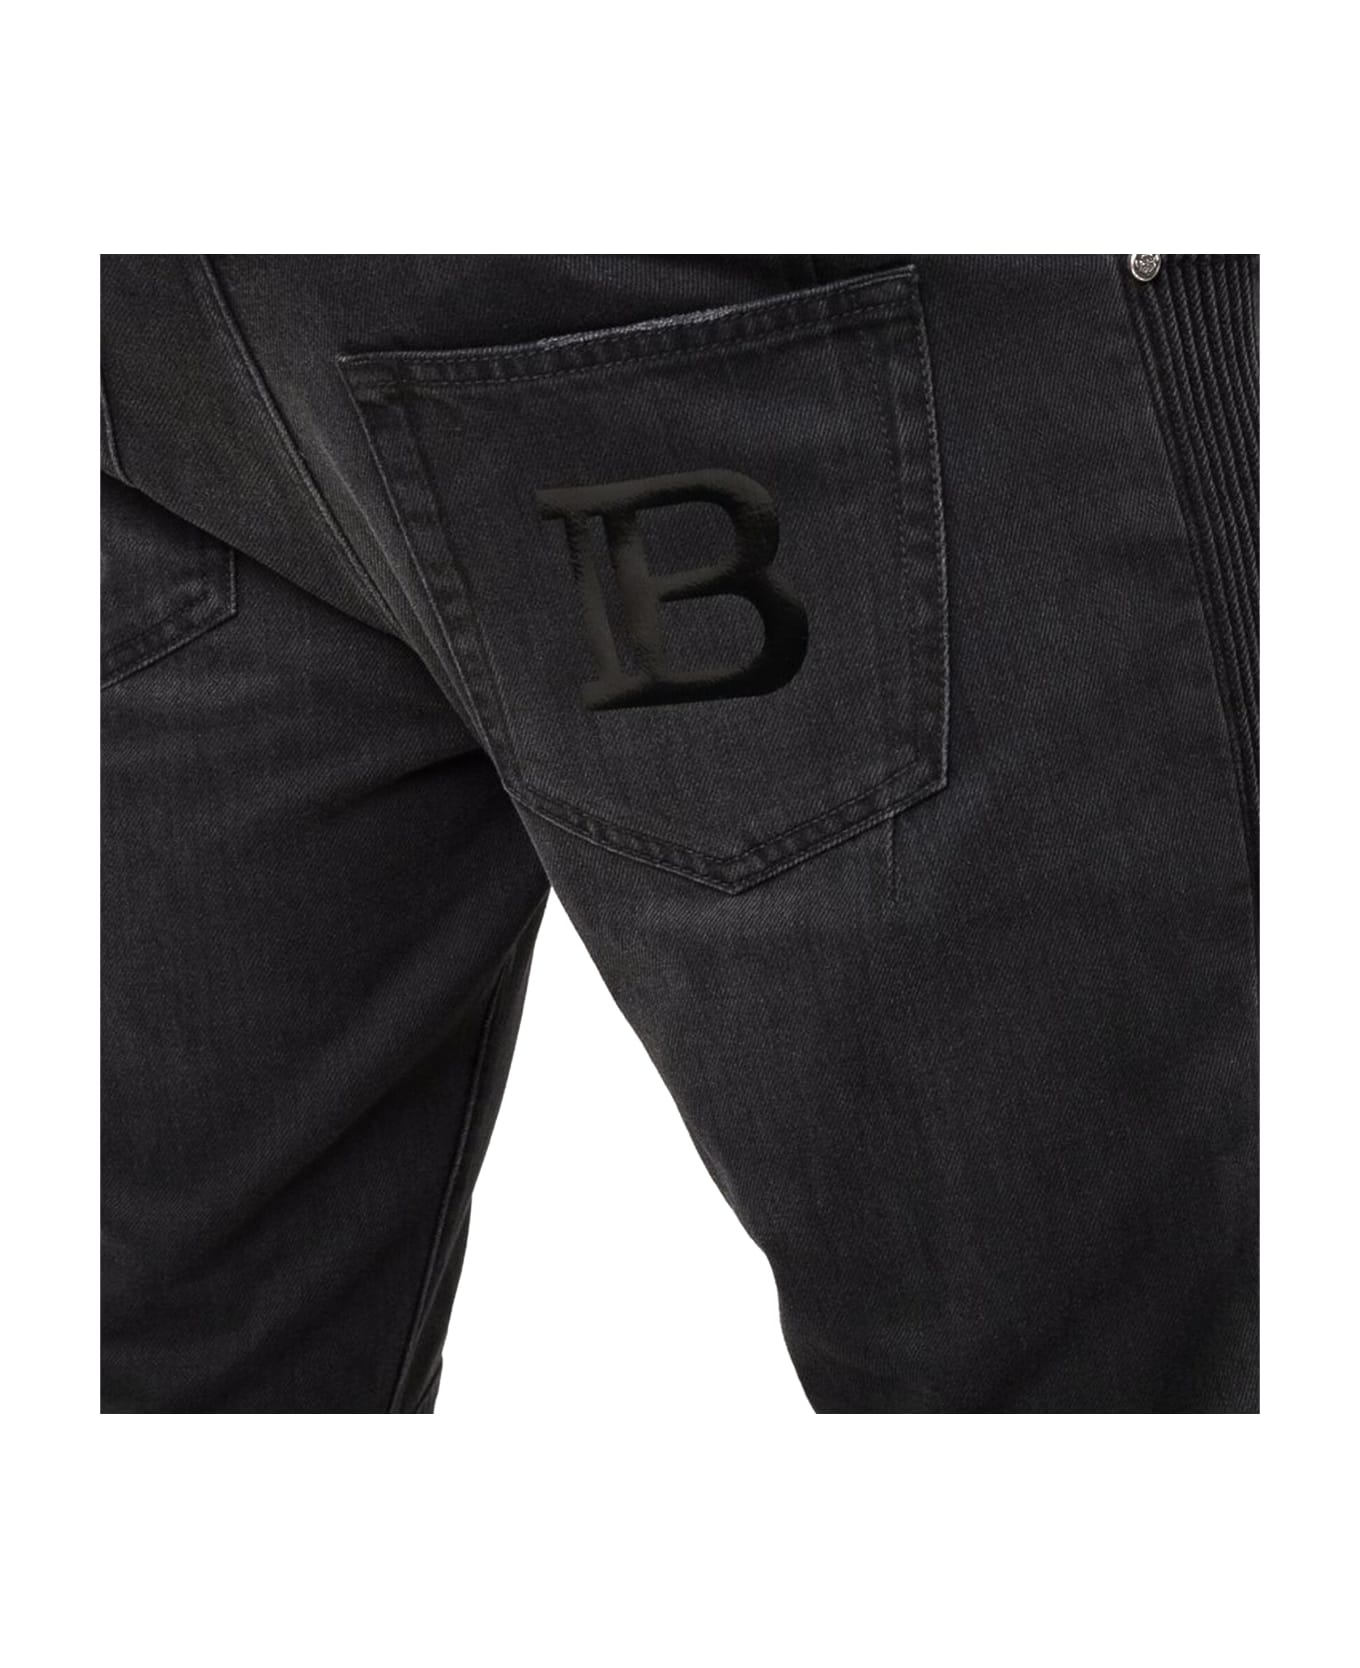 Balmain Denim Jeans - Black デニム